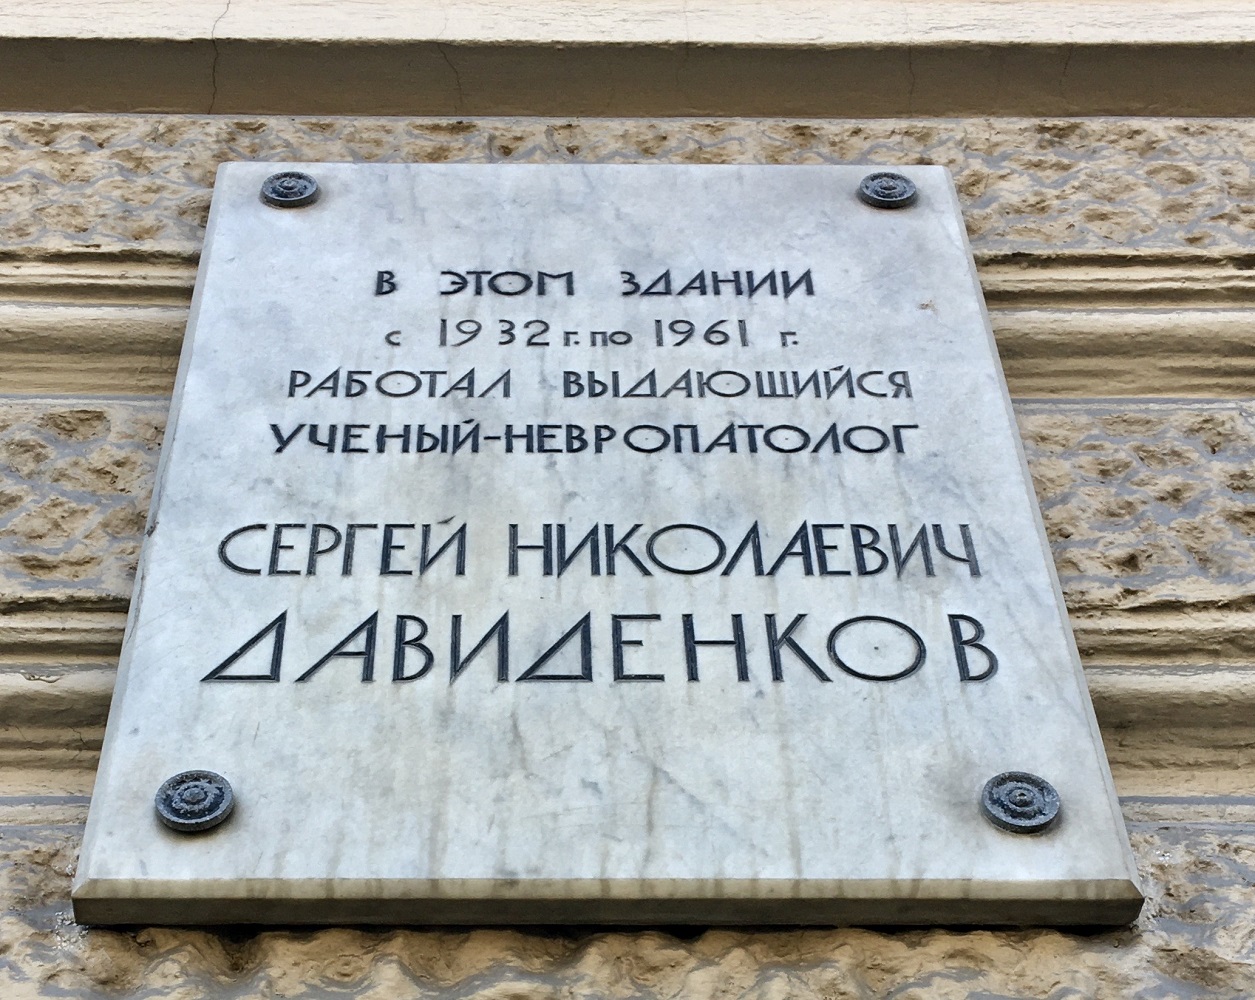 Petersburg, Кирочная улица, 41 / Парадная улица, 2. Petersburg — Memorial plaques